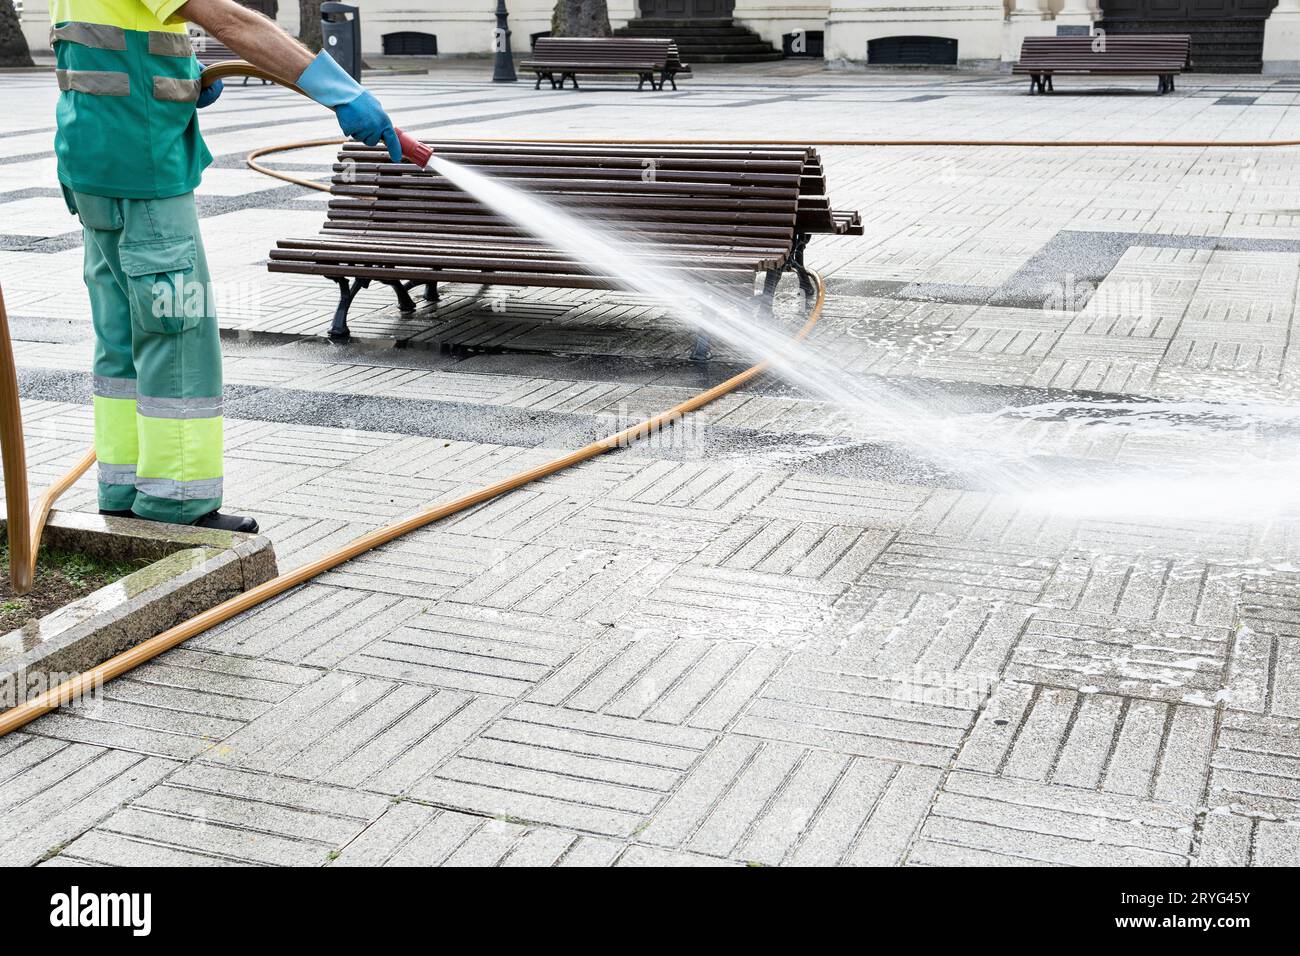 Lavoratore che pulisce una piazza della città con acqua usando una cannula. Concetto di manutenzione del parco pubblico. Copia spazio Foto Stock